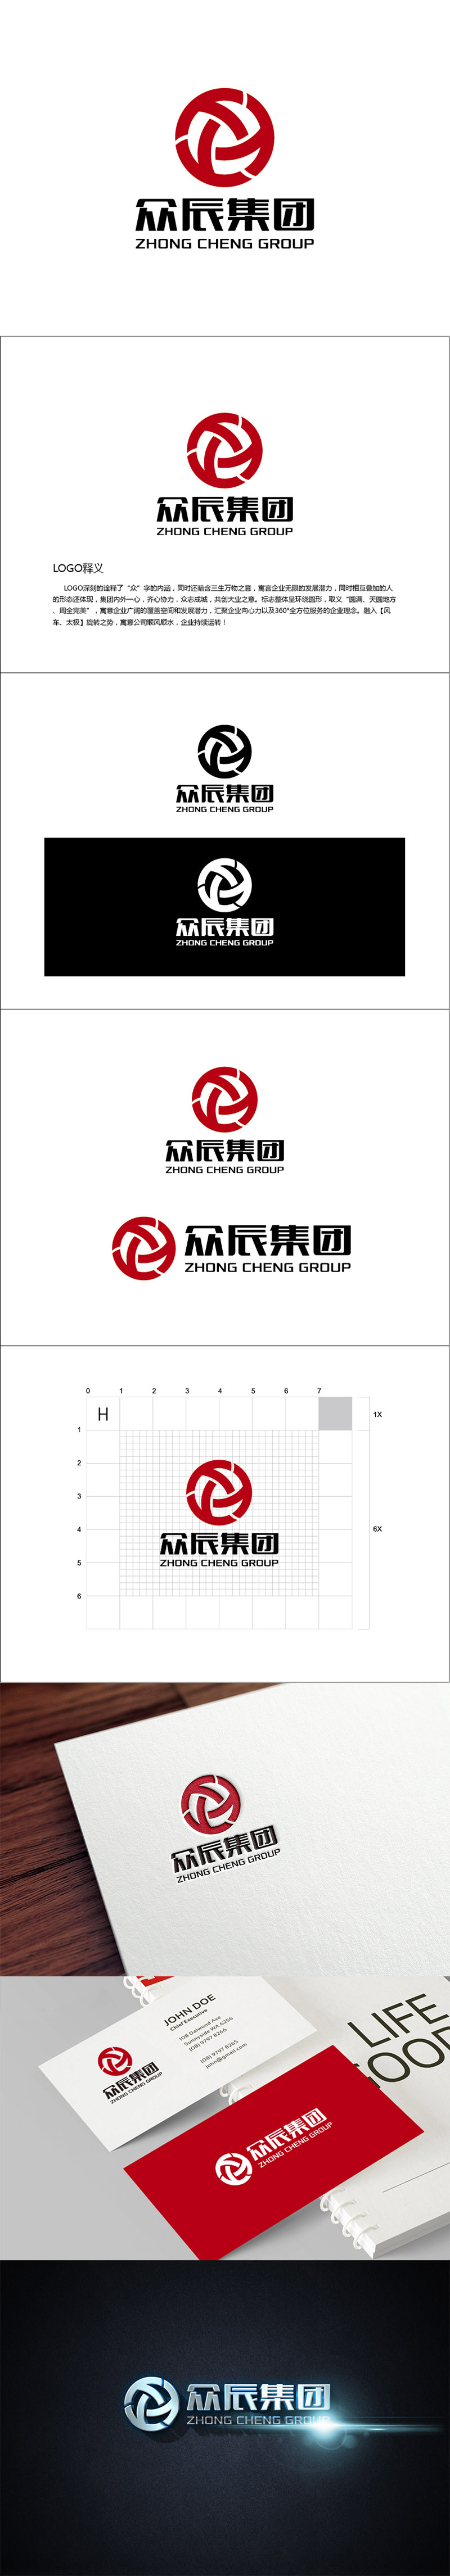 李冬冬的众辰集团logo设计